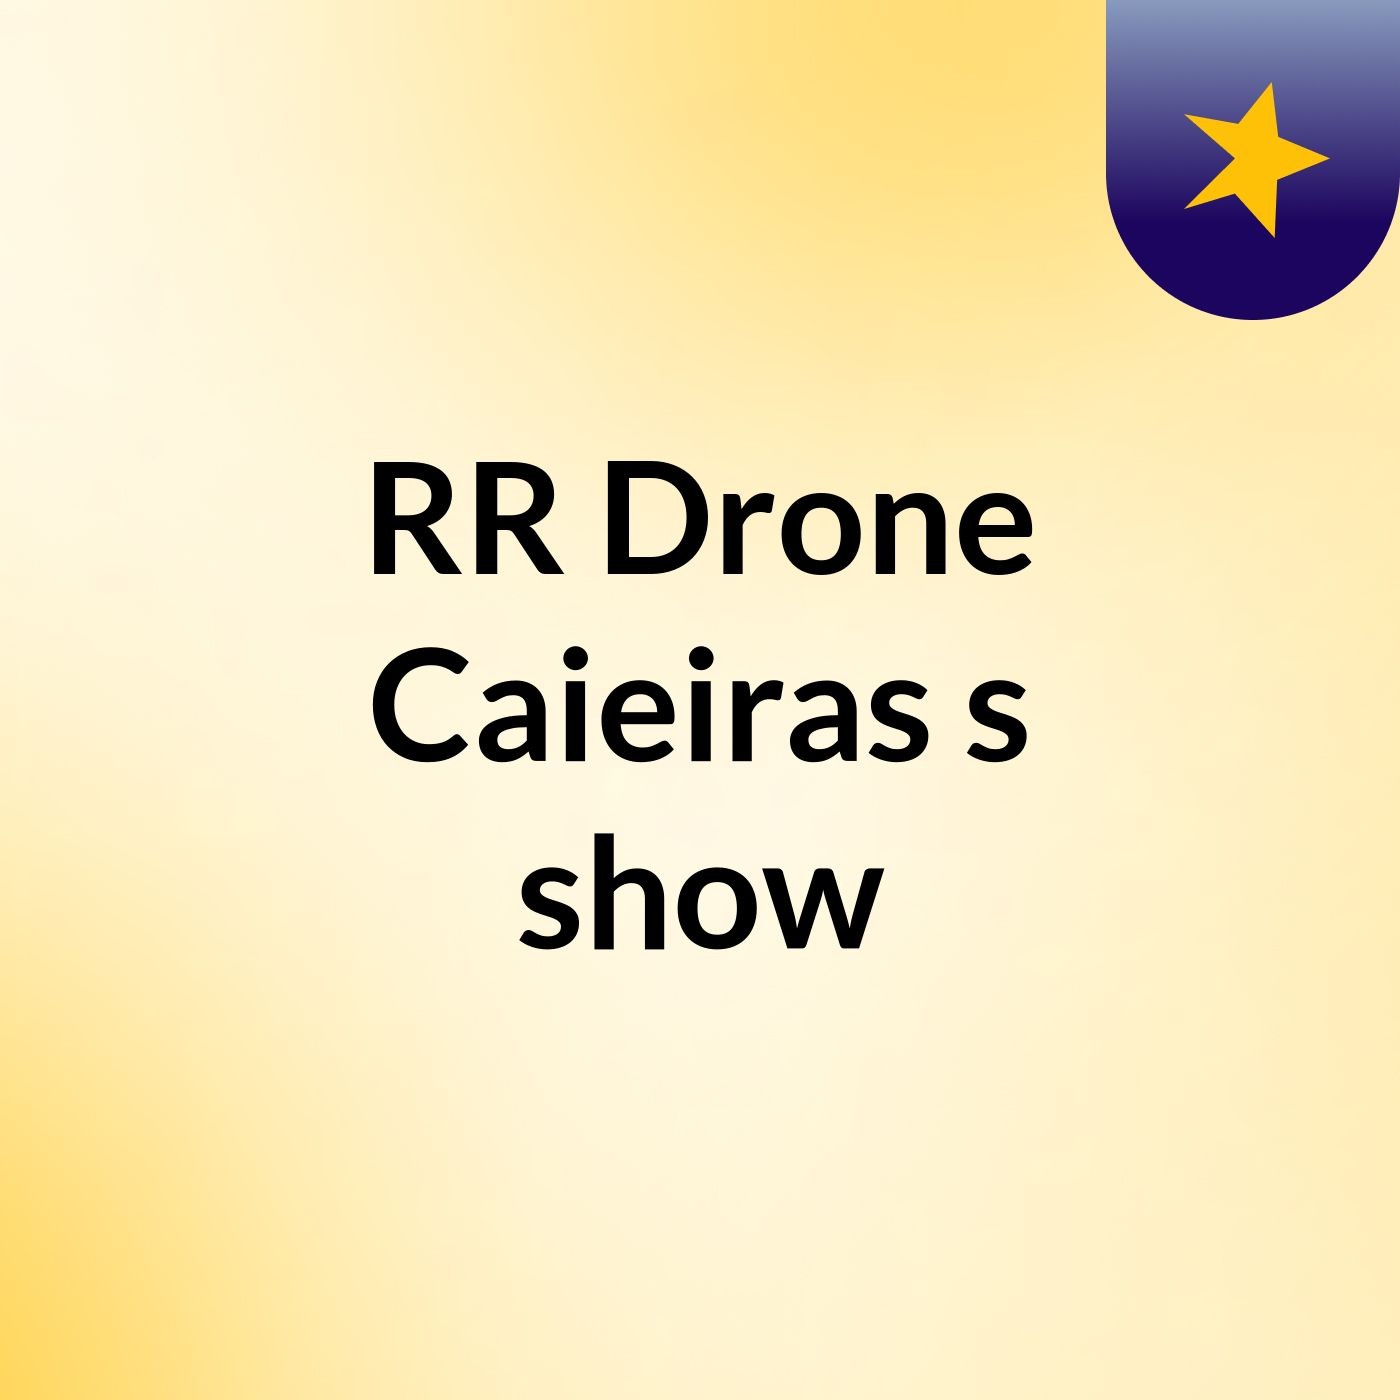 RR Drone Caieiras's show